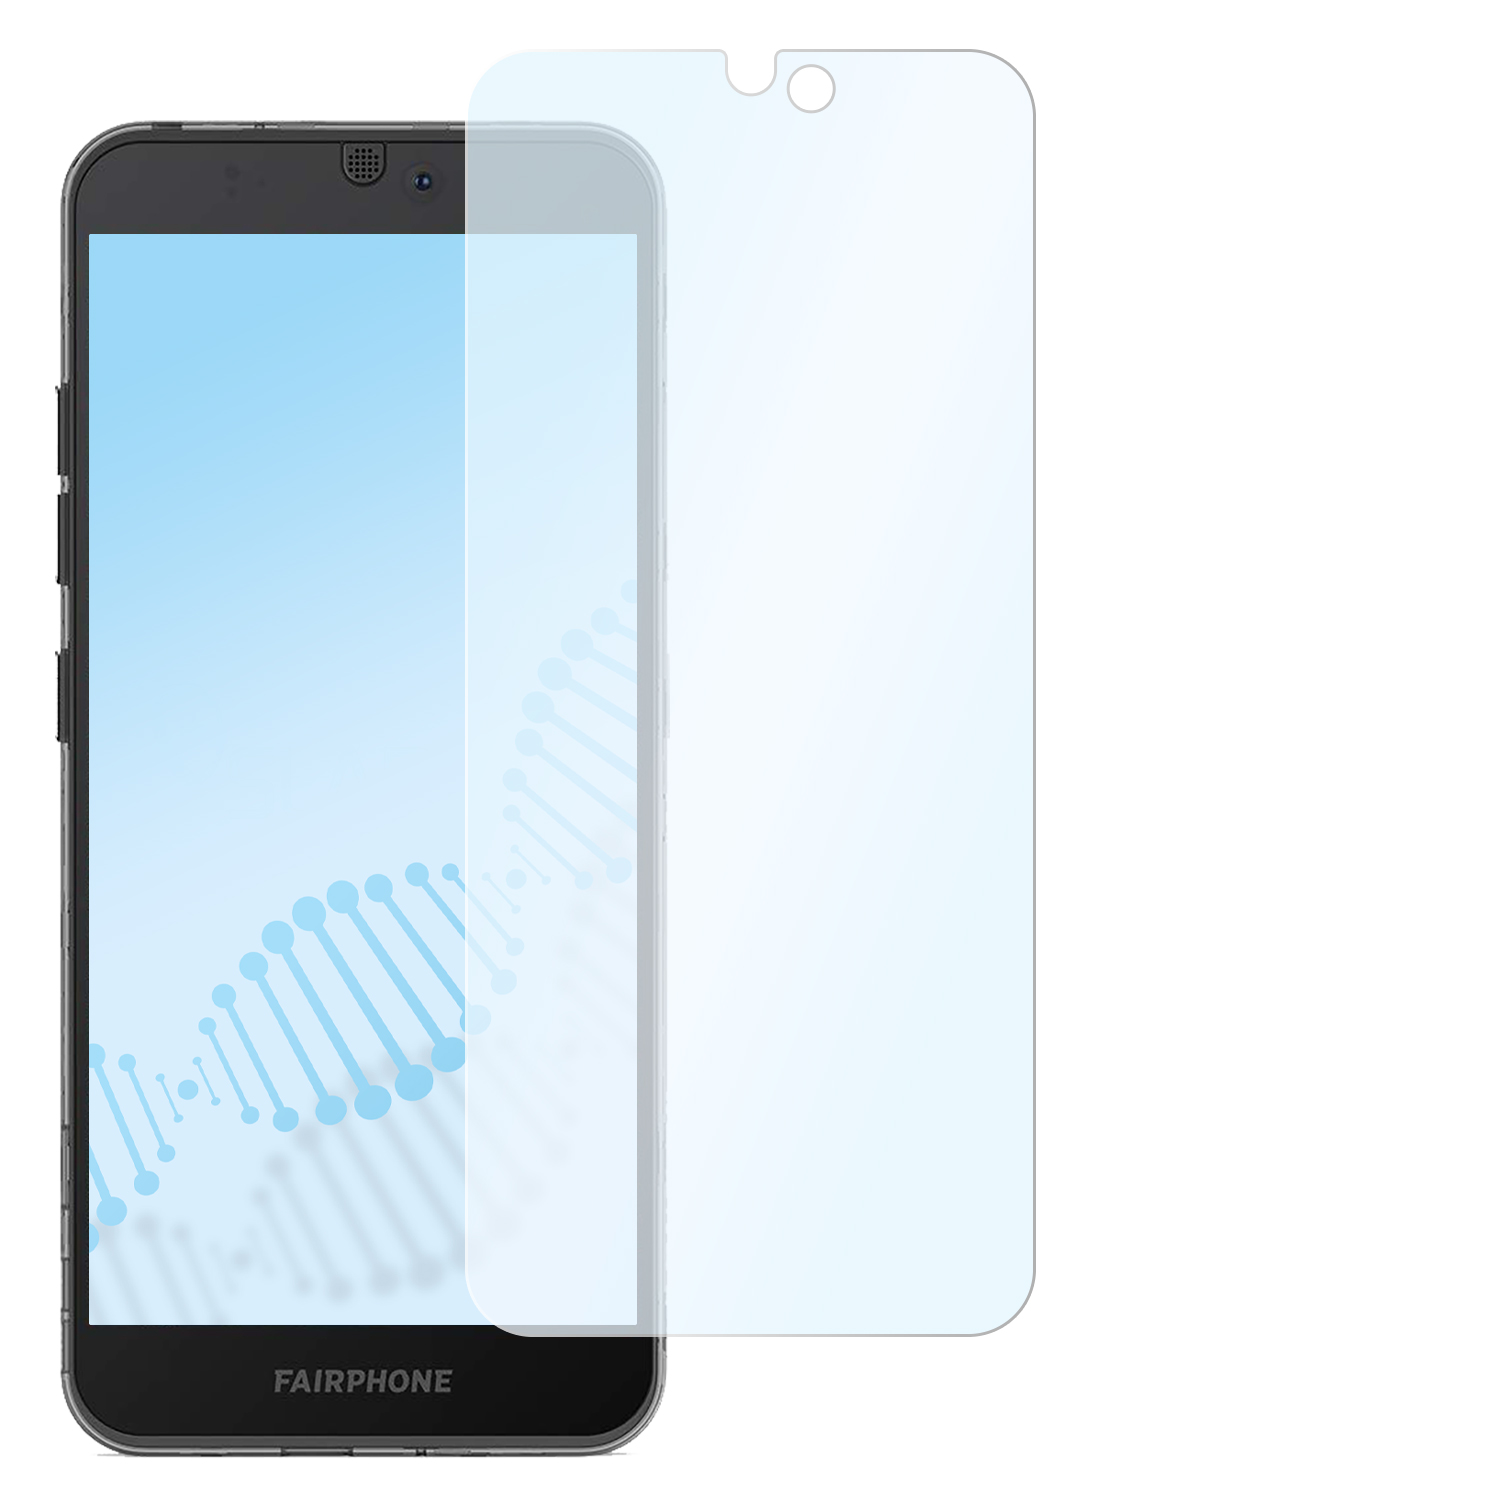 SLABO antibakterielle Hybridglasfolie Fairphone Displayschutz(für 3) flexible